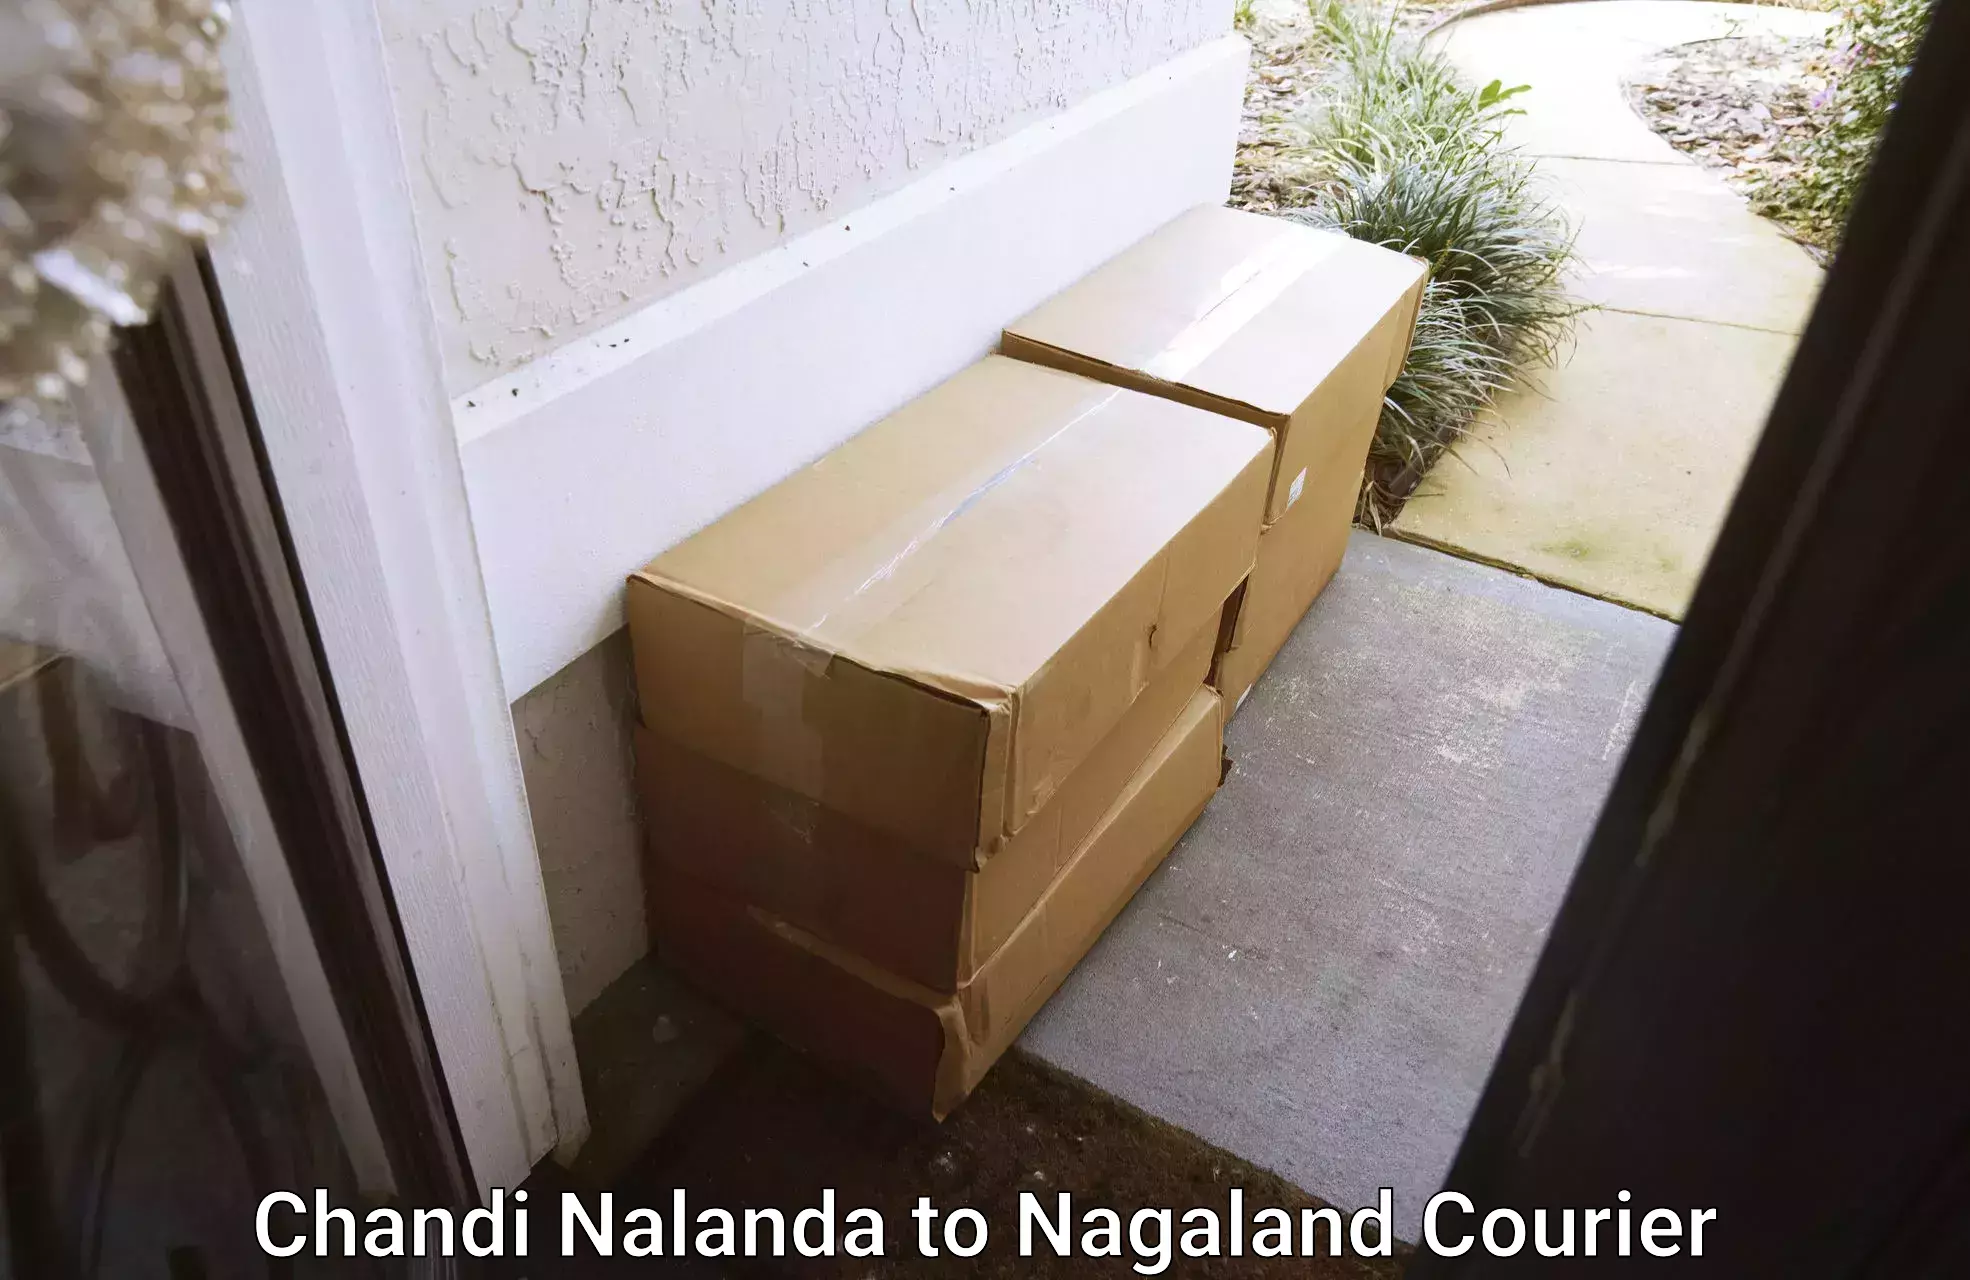 Furniture transport company Chandi Nalanda to NIT Nagaland